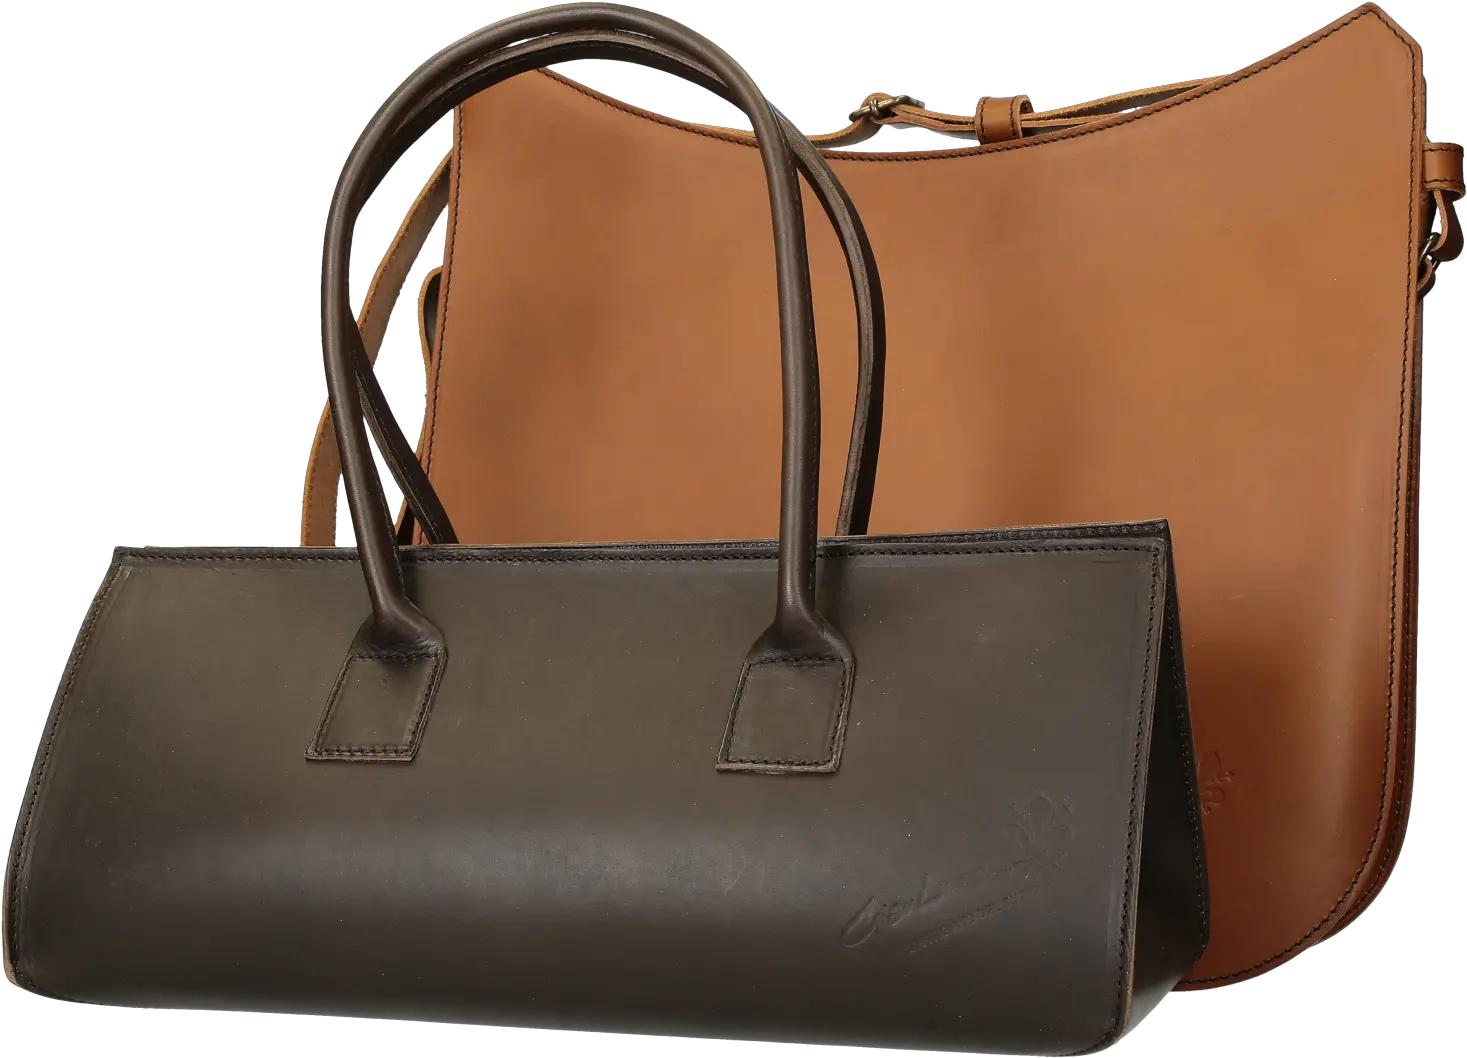 Download Handmade Leather Handbags Shoulder Bag Png Image Handbag Bag Png